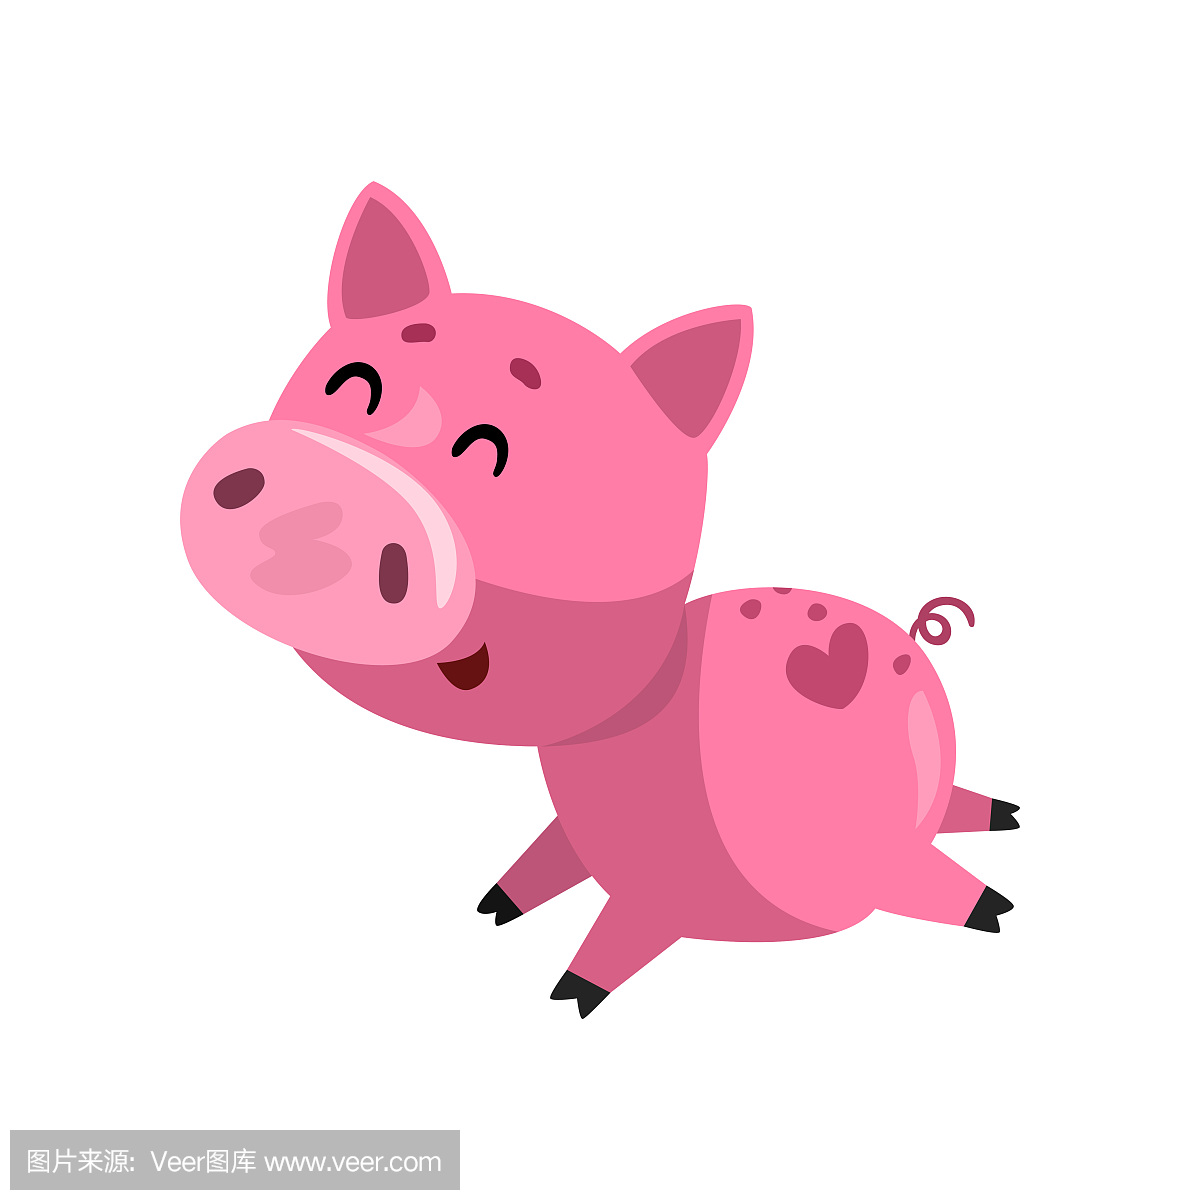 漂亮的粉色猪，卡通矢量图插图 向量例证. 插画 包括有 设计, 查出, 本质, 愉快, 字符, 婴孩, 快乐 - 179652989